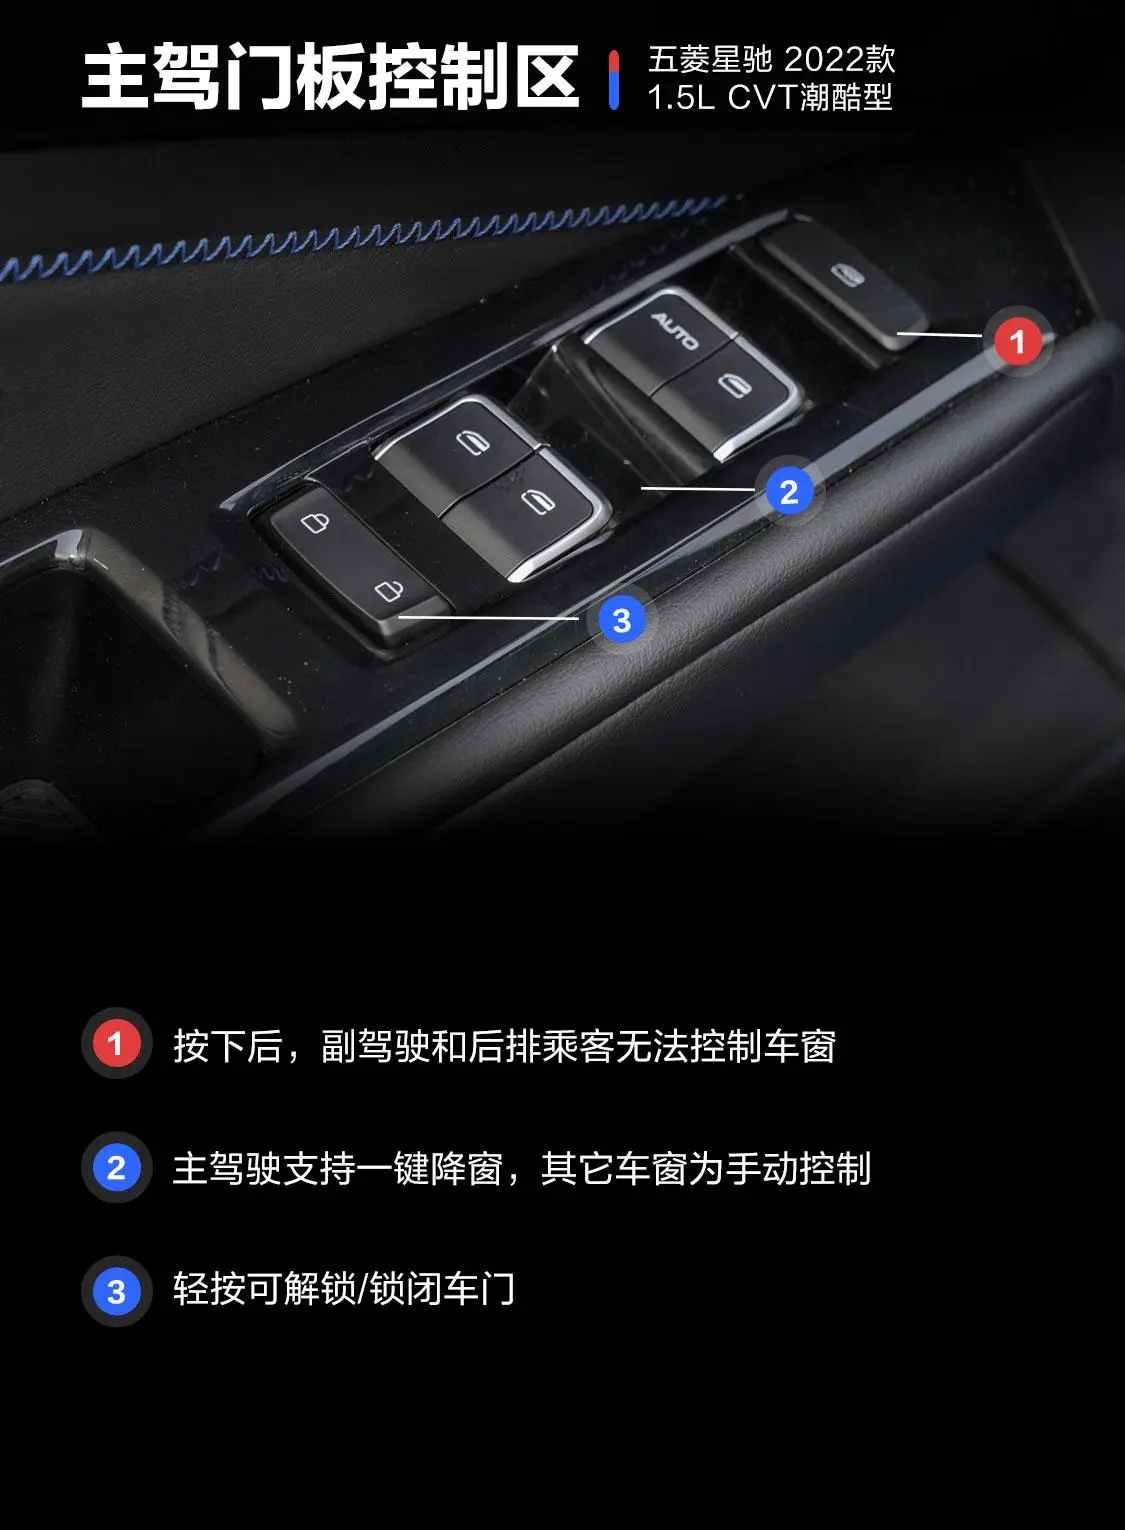 五菱星驰1.5T CVT潮酷型